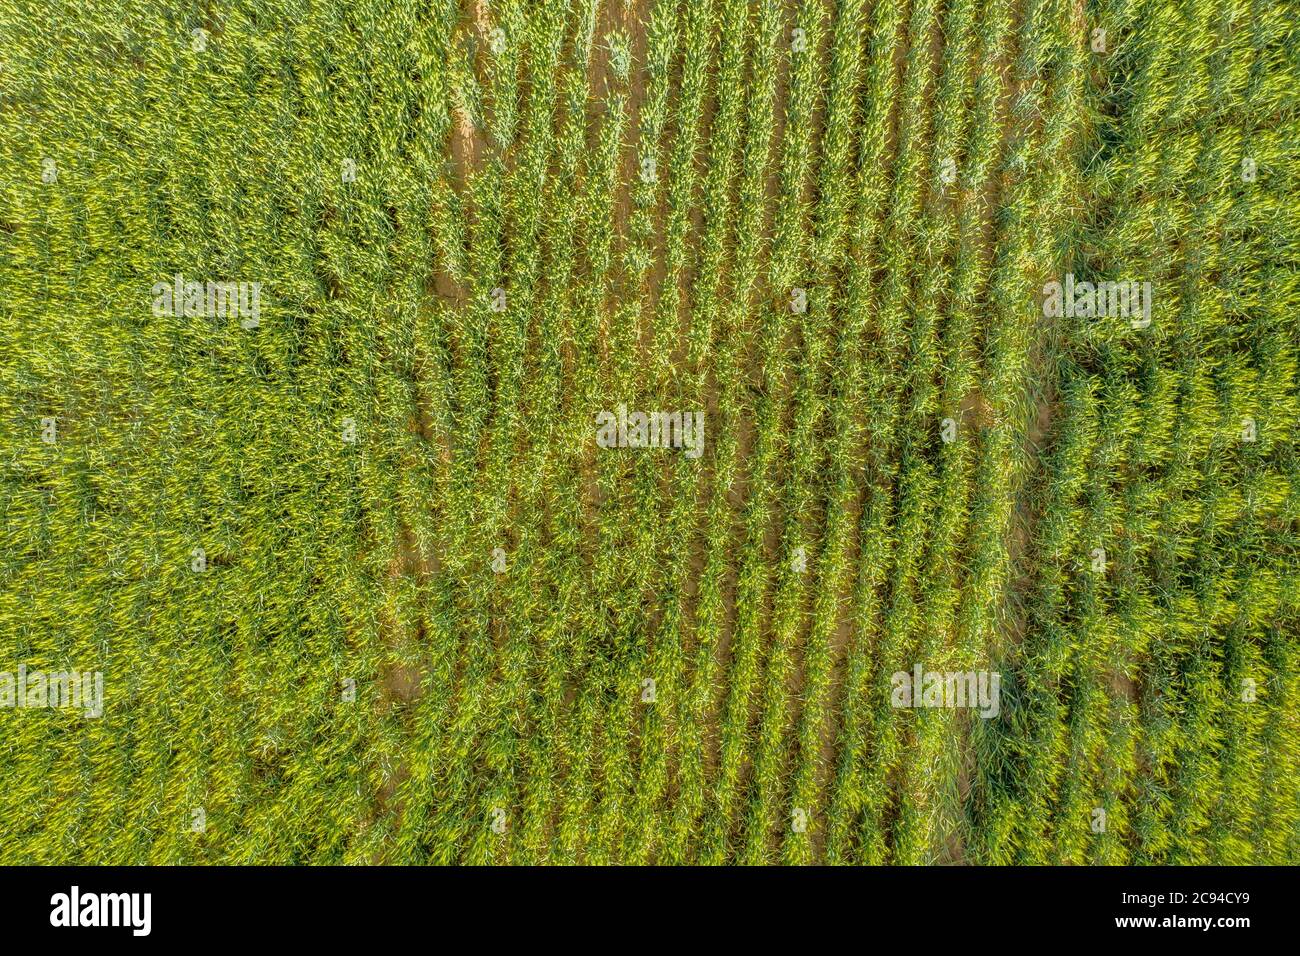 Una imagen de drones con vistas a una cosecha de trigo de reciente crecimiento muestra una escena clásica de tierras de cultivo típica del medio oeste. Foto de stock